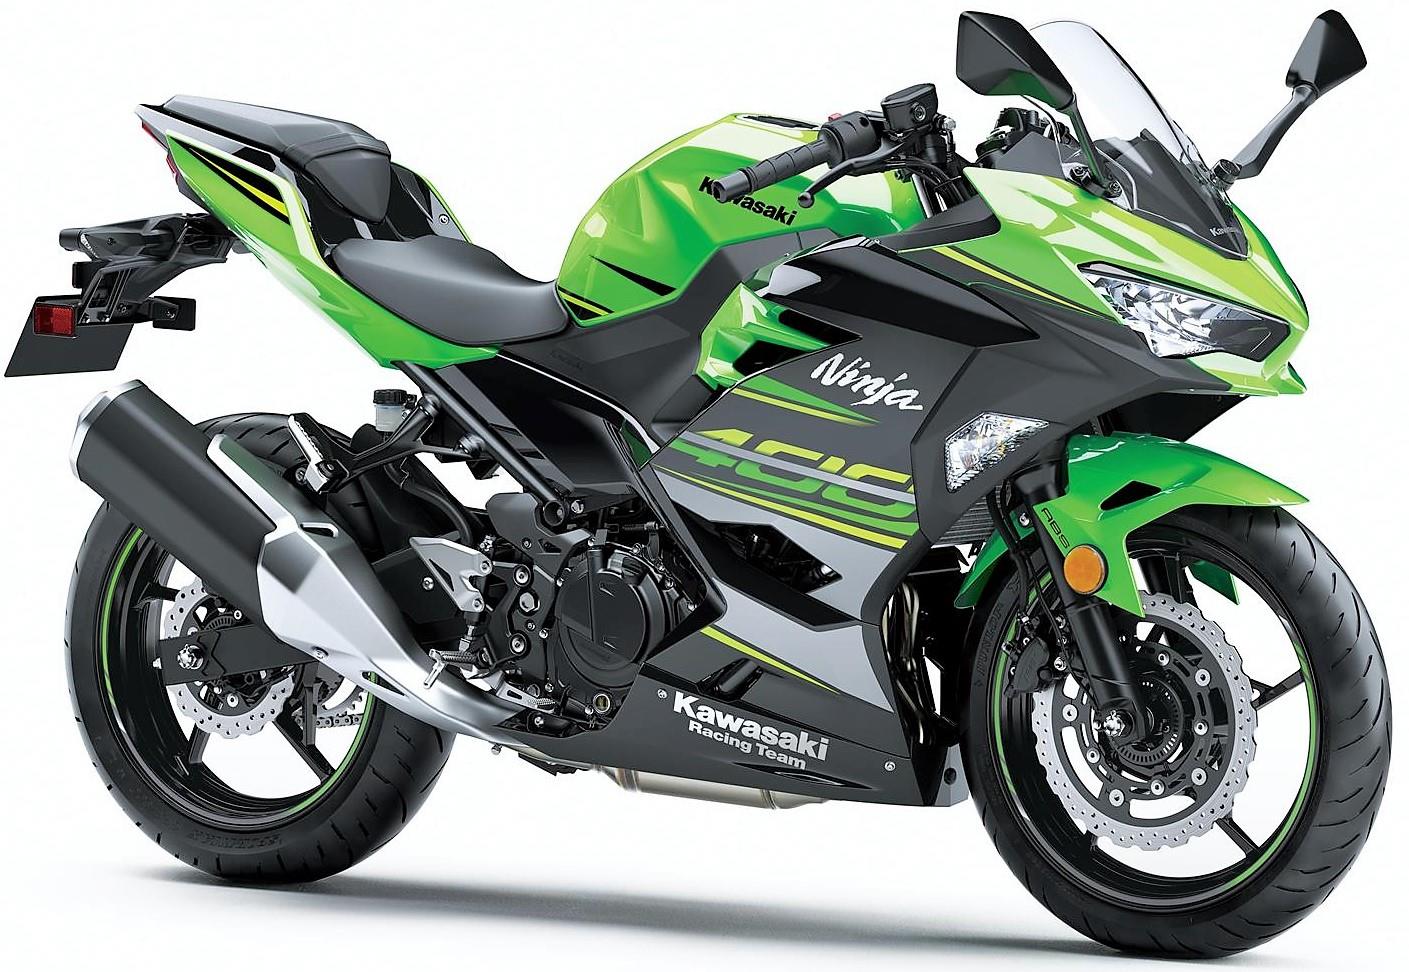 Kawasaki Ninja 400 Price Hiked in India